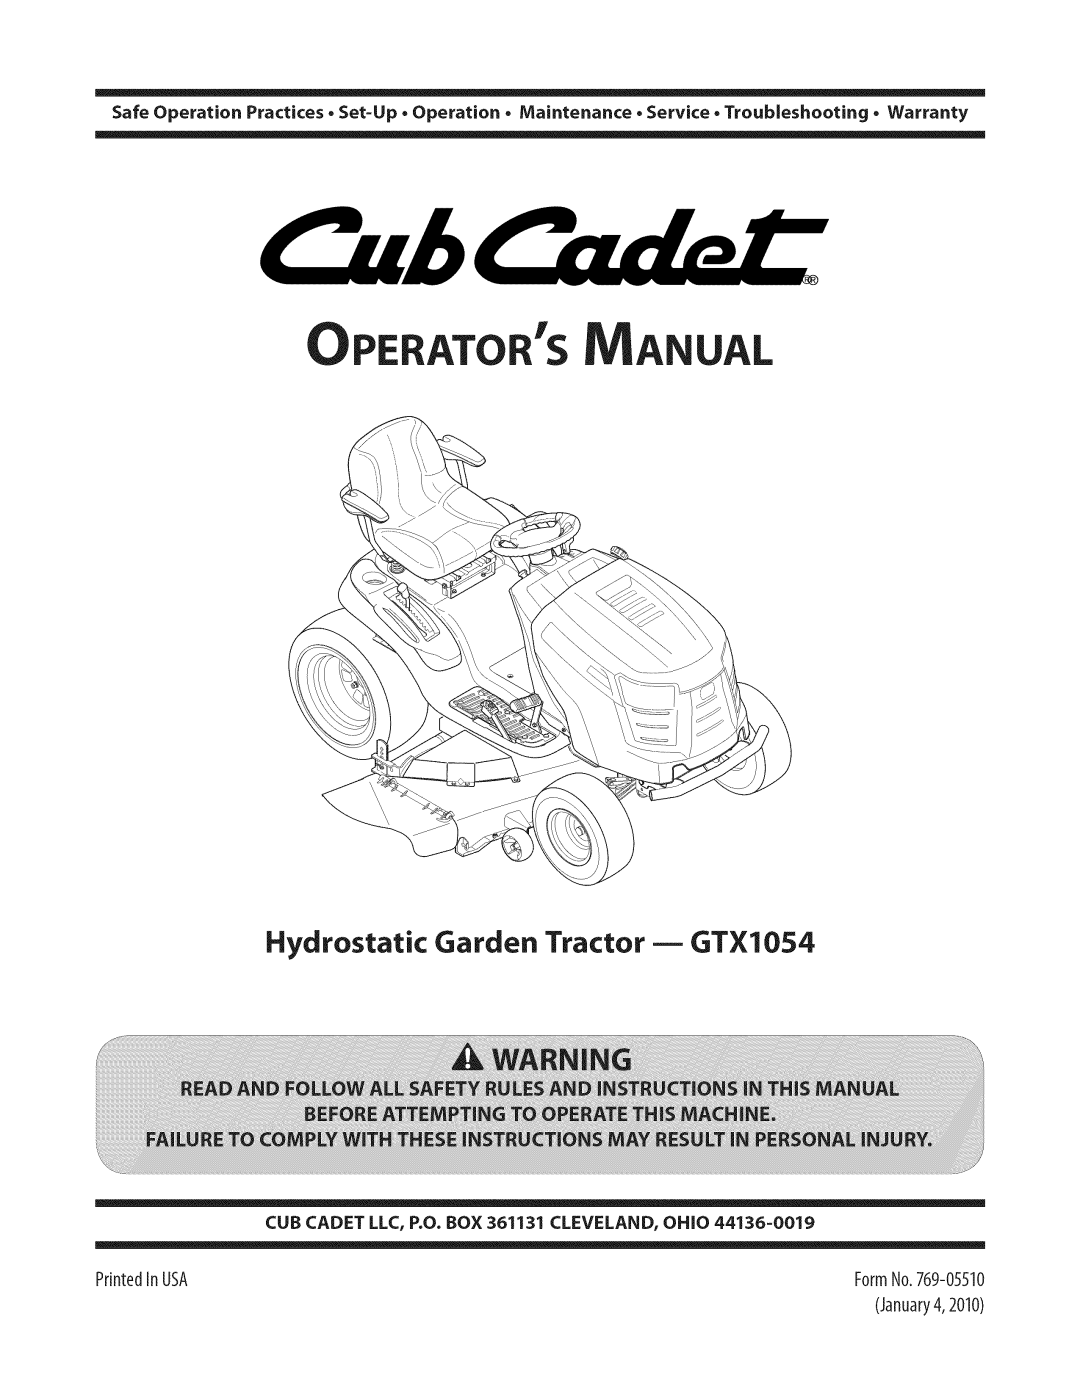 Cub Cadet warranty Ator S Anual, Hydrostatic Garden Tractor m GTX1054, CUB CADET LLC, P.O. BOX 361131 CLEVELAND, OHiO 